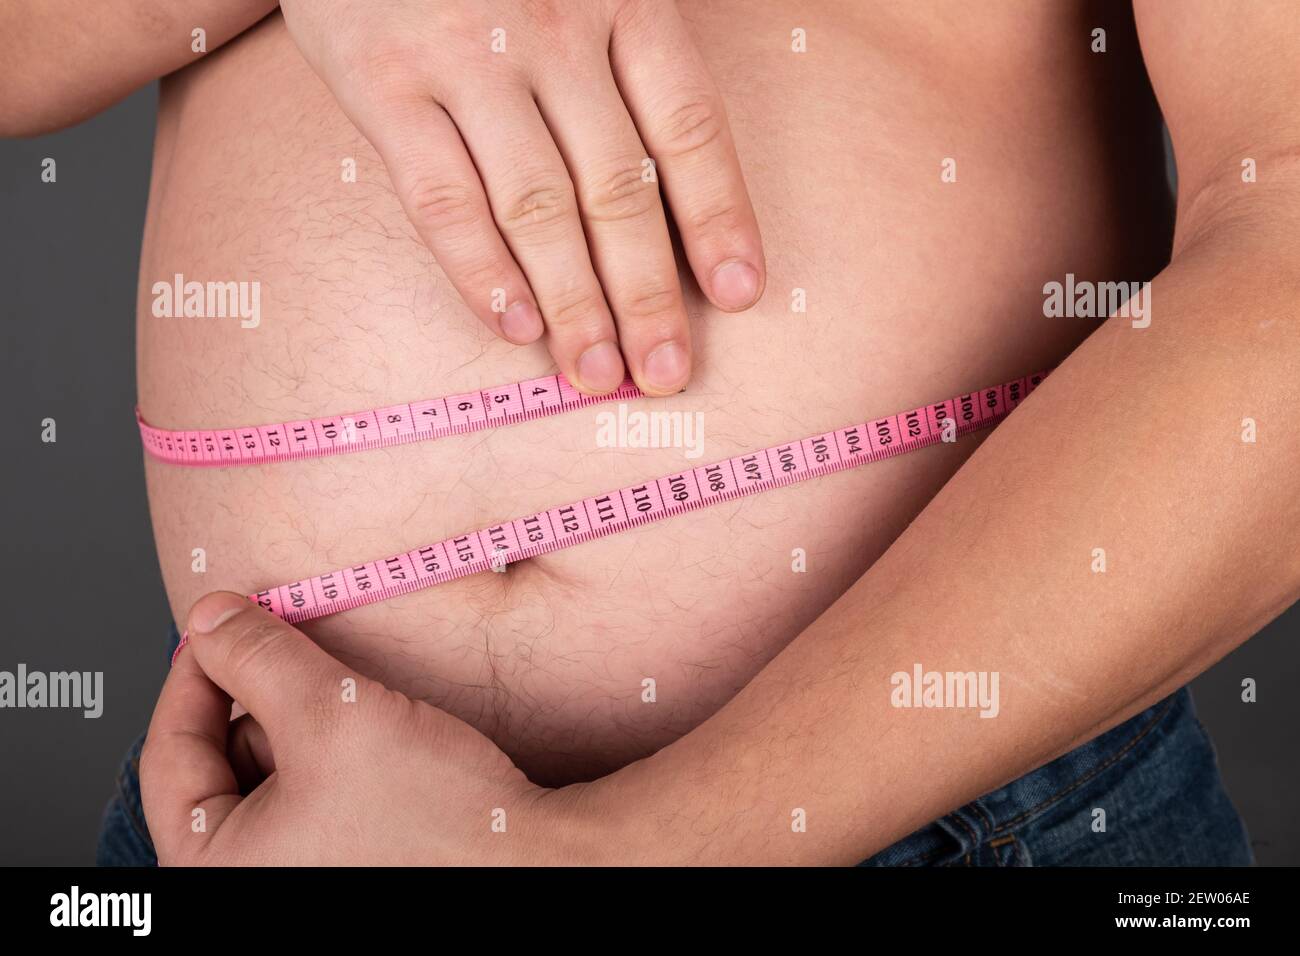 Grasa vientre con obesidad medida con un centímetro Foto de stock